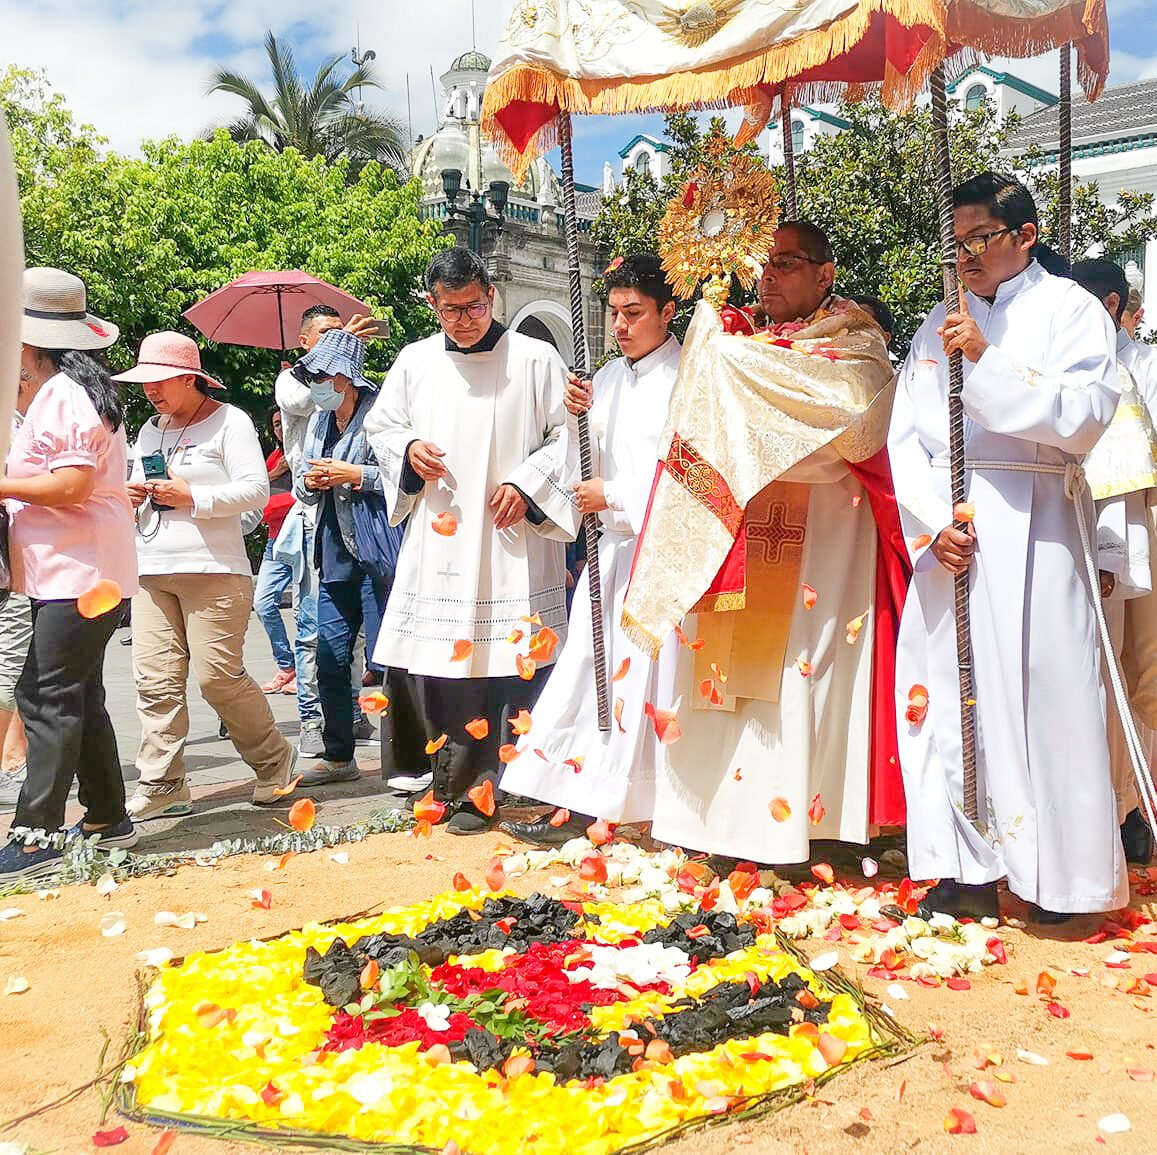 La comunidad de Fasta Quito participó activamente de la celebración de Corpus Christi